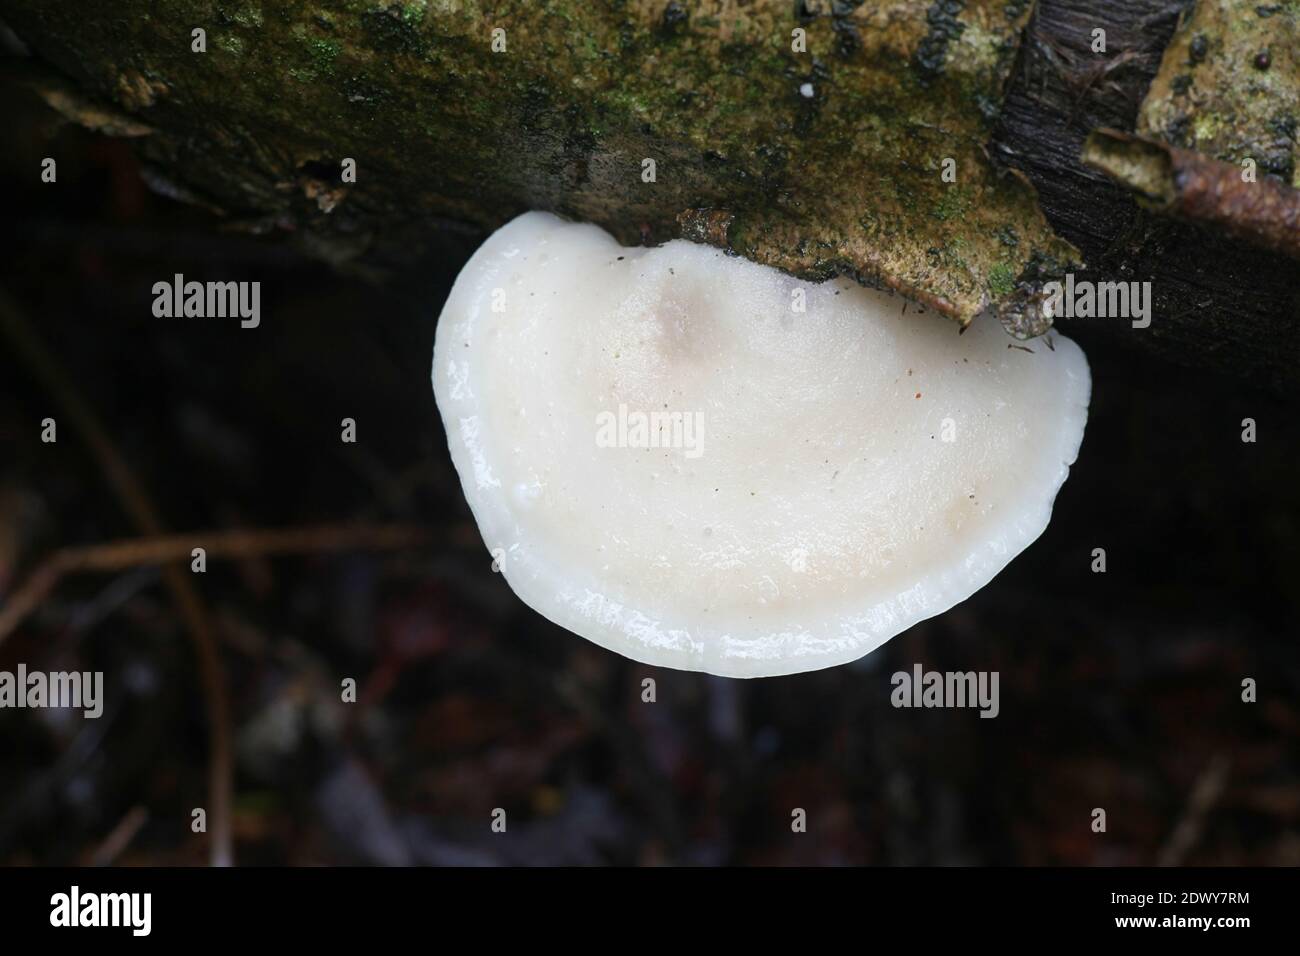 Tyromyces chioneus, connu sous le nom de polypore de fromage blanc, se tarissent de champignons finlandais Banque D'Images